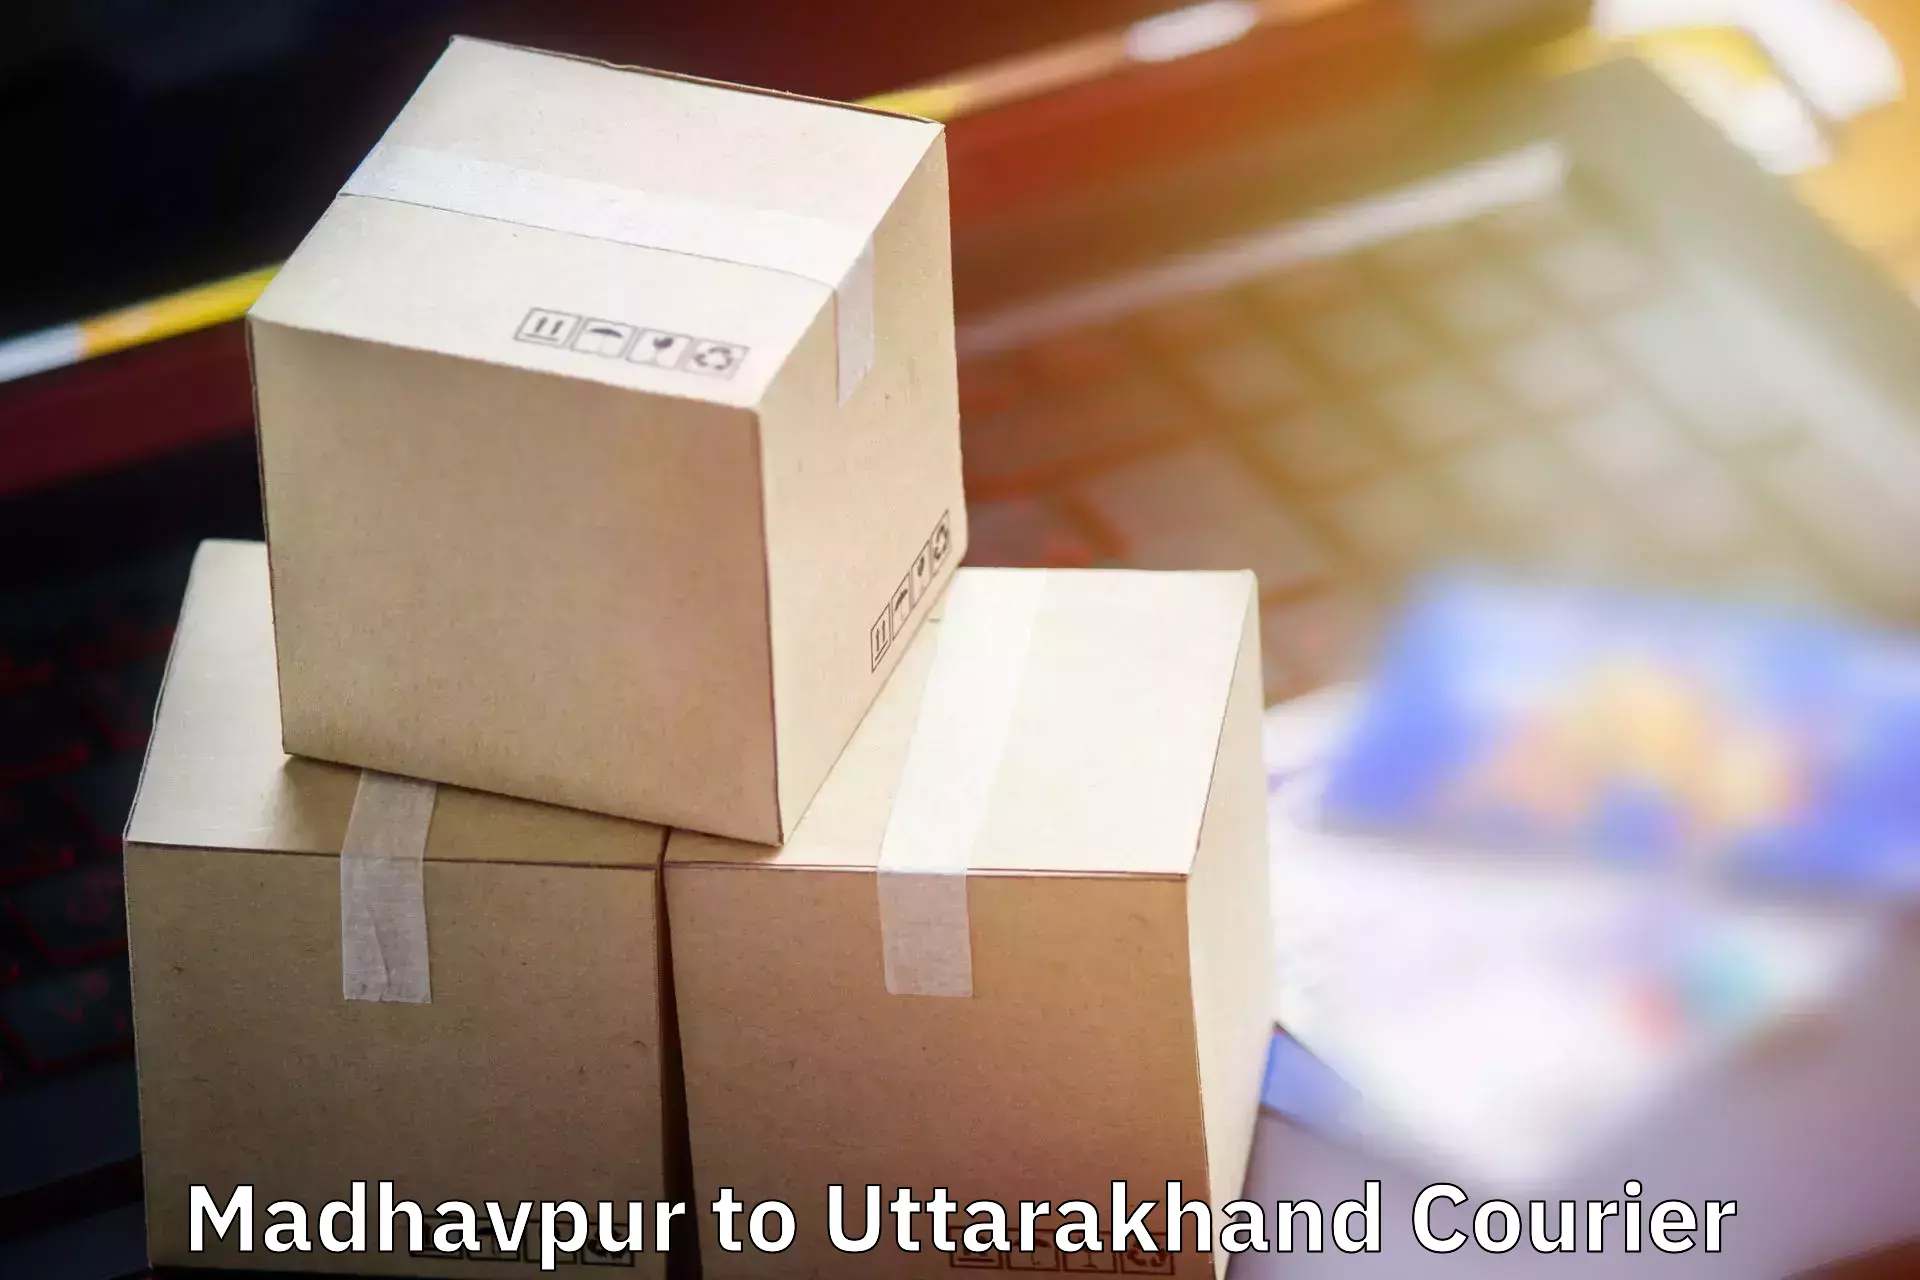 Luggage shipping service Madhavpur to Kotdwara